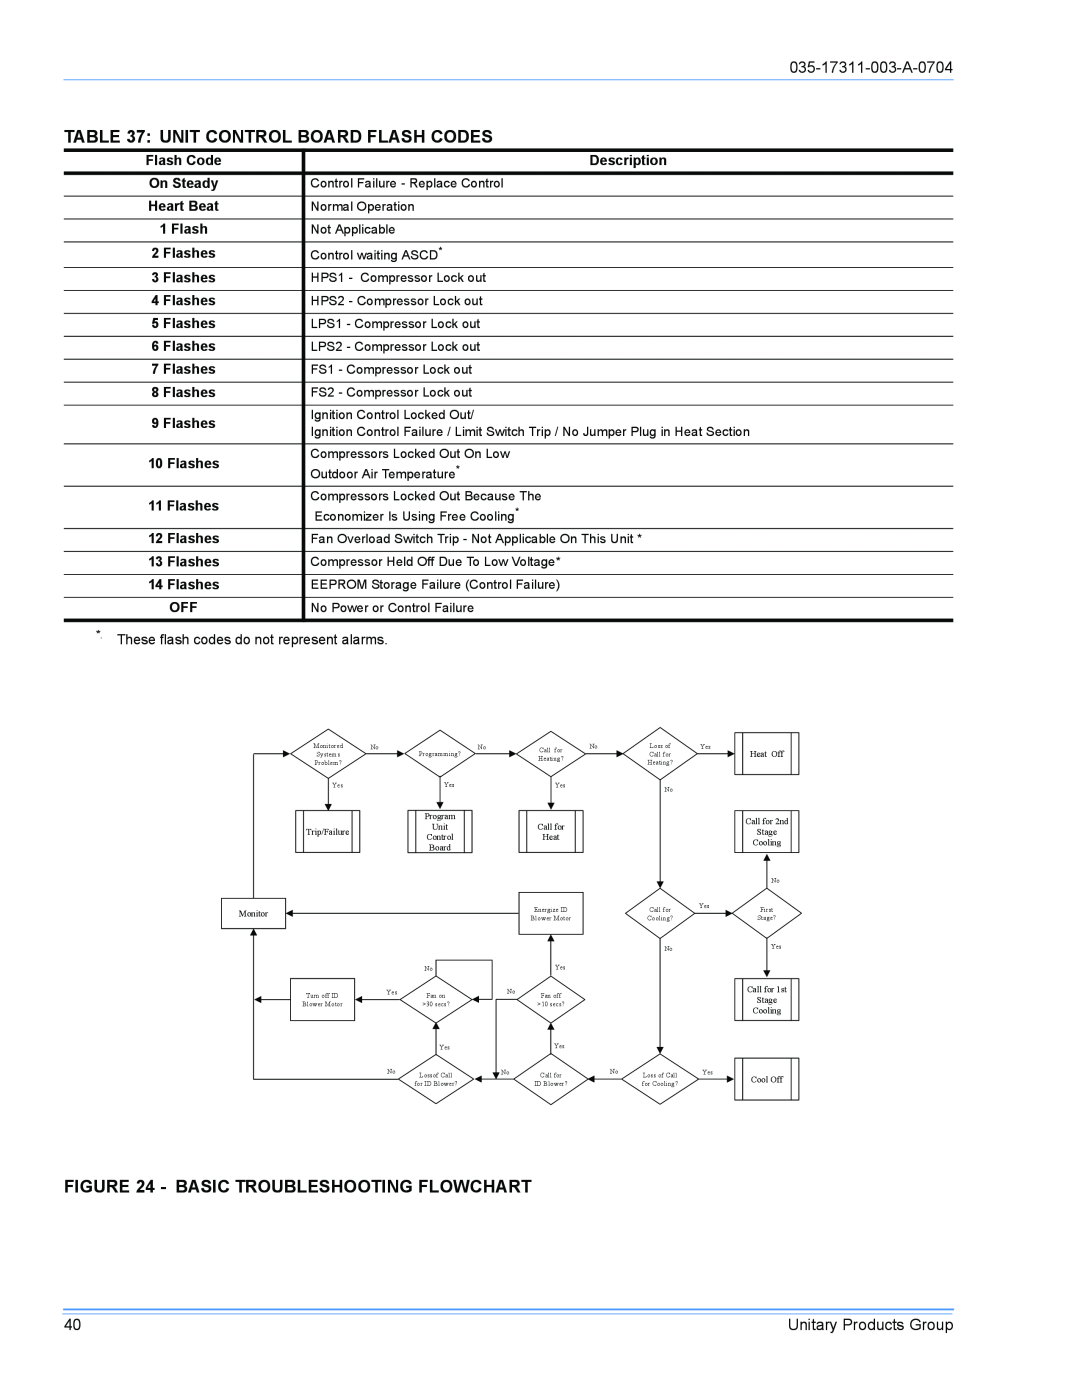 York DM090 installation manual Unit Control Board Flash Codes, Basic Troubleshooting Flowchart, 035-17311-003-A-0704 